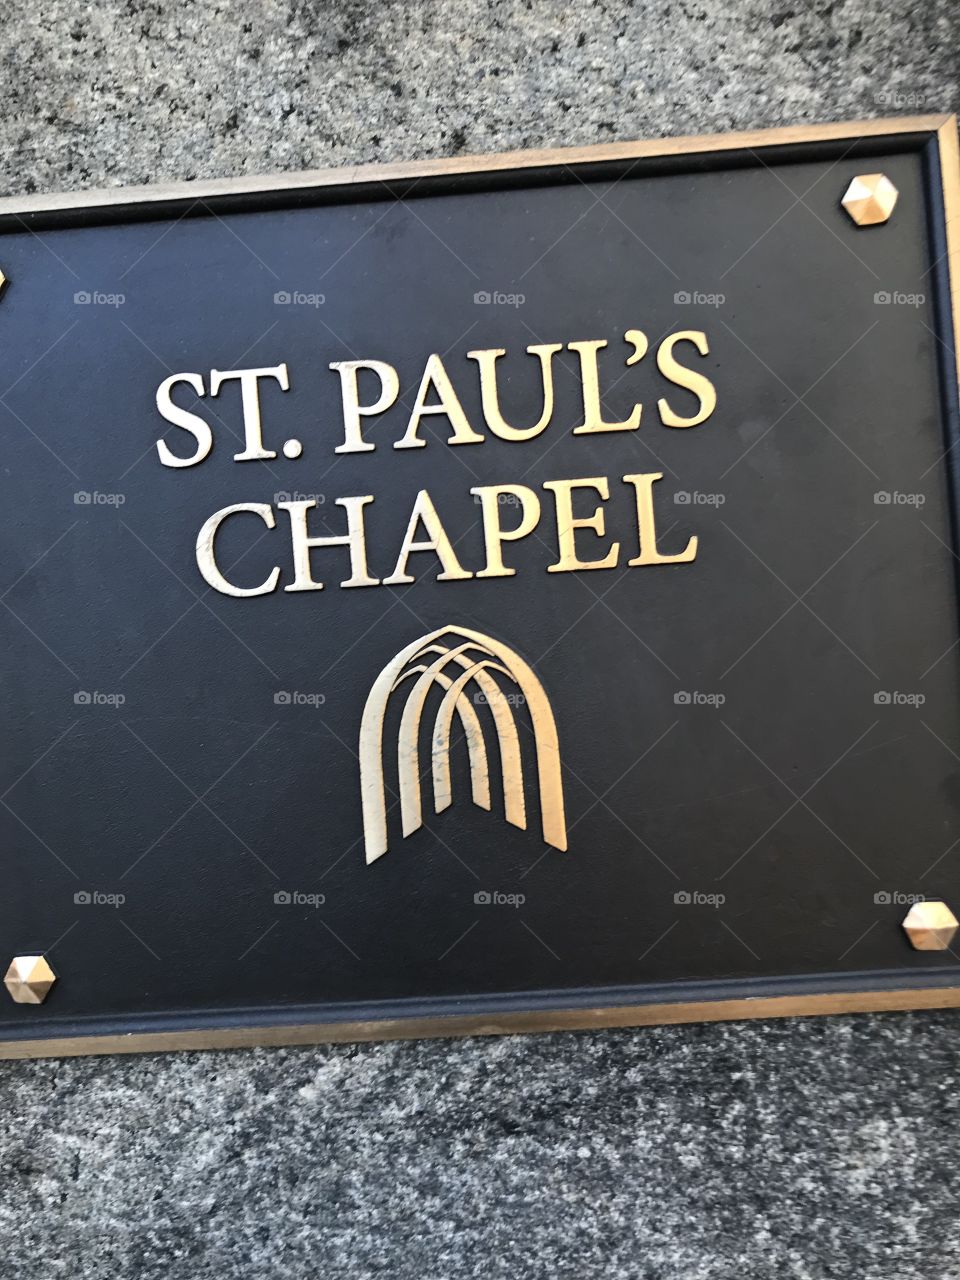 St. Paul’s chapel